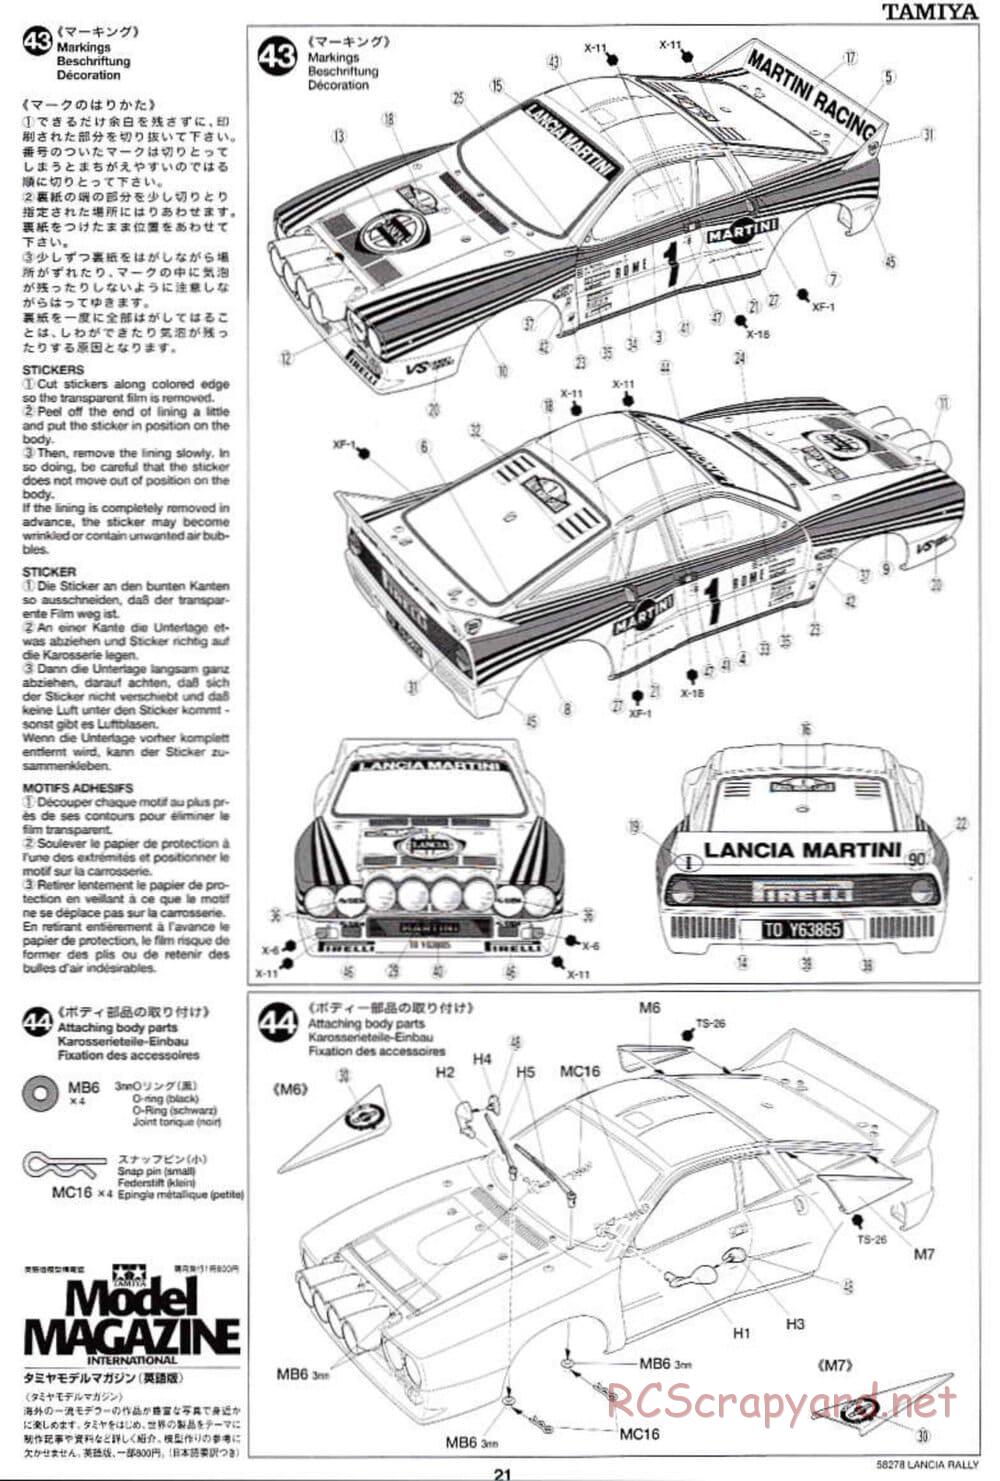 Tamiya - Lancia 037 Rally - TA-03RS Chassis - Manual - Page 21